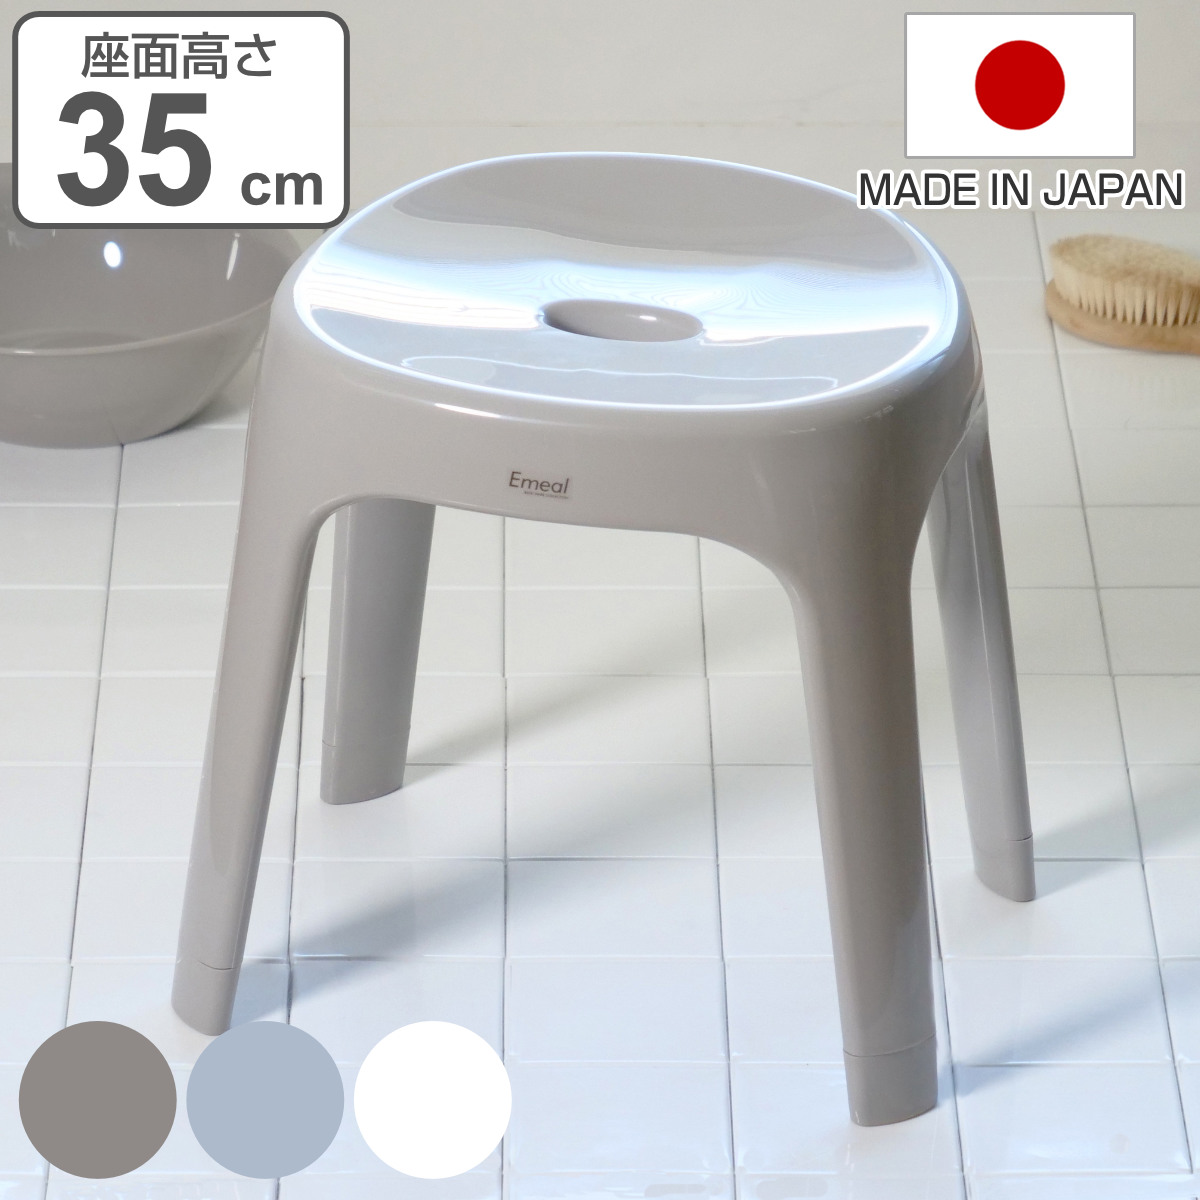 風呂椅子 座面高さ35cm Emeal エミール 日本製